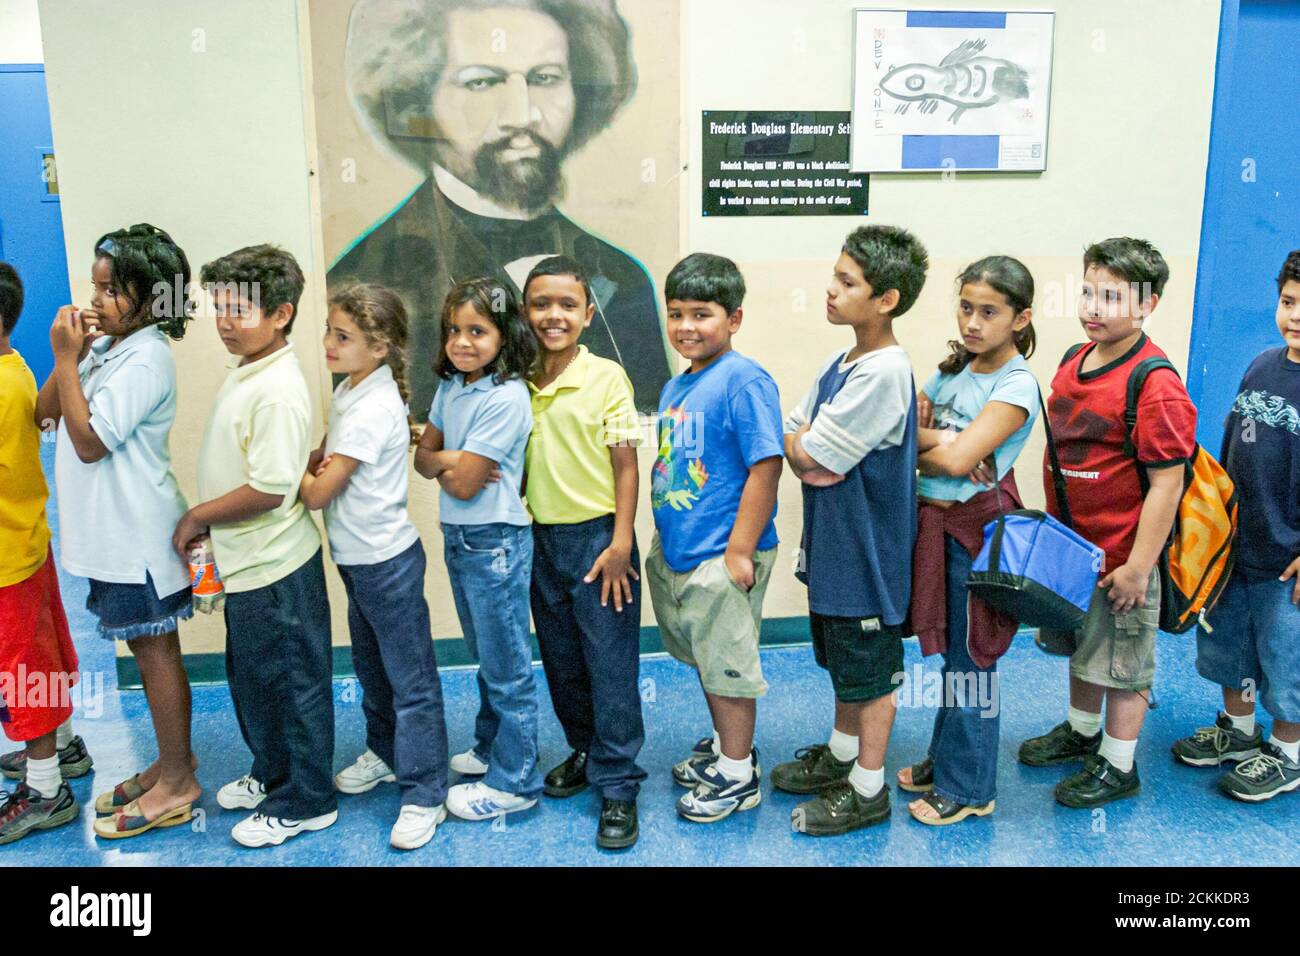 Miami Florida, Frederick Douglass Elementary School, niedriges Einkommen, Studenten, hispanische Jungen Mädchen, Flur im Flur, Schlange, historisches Porträt Stockfoto